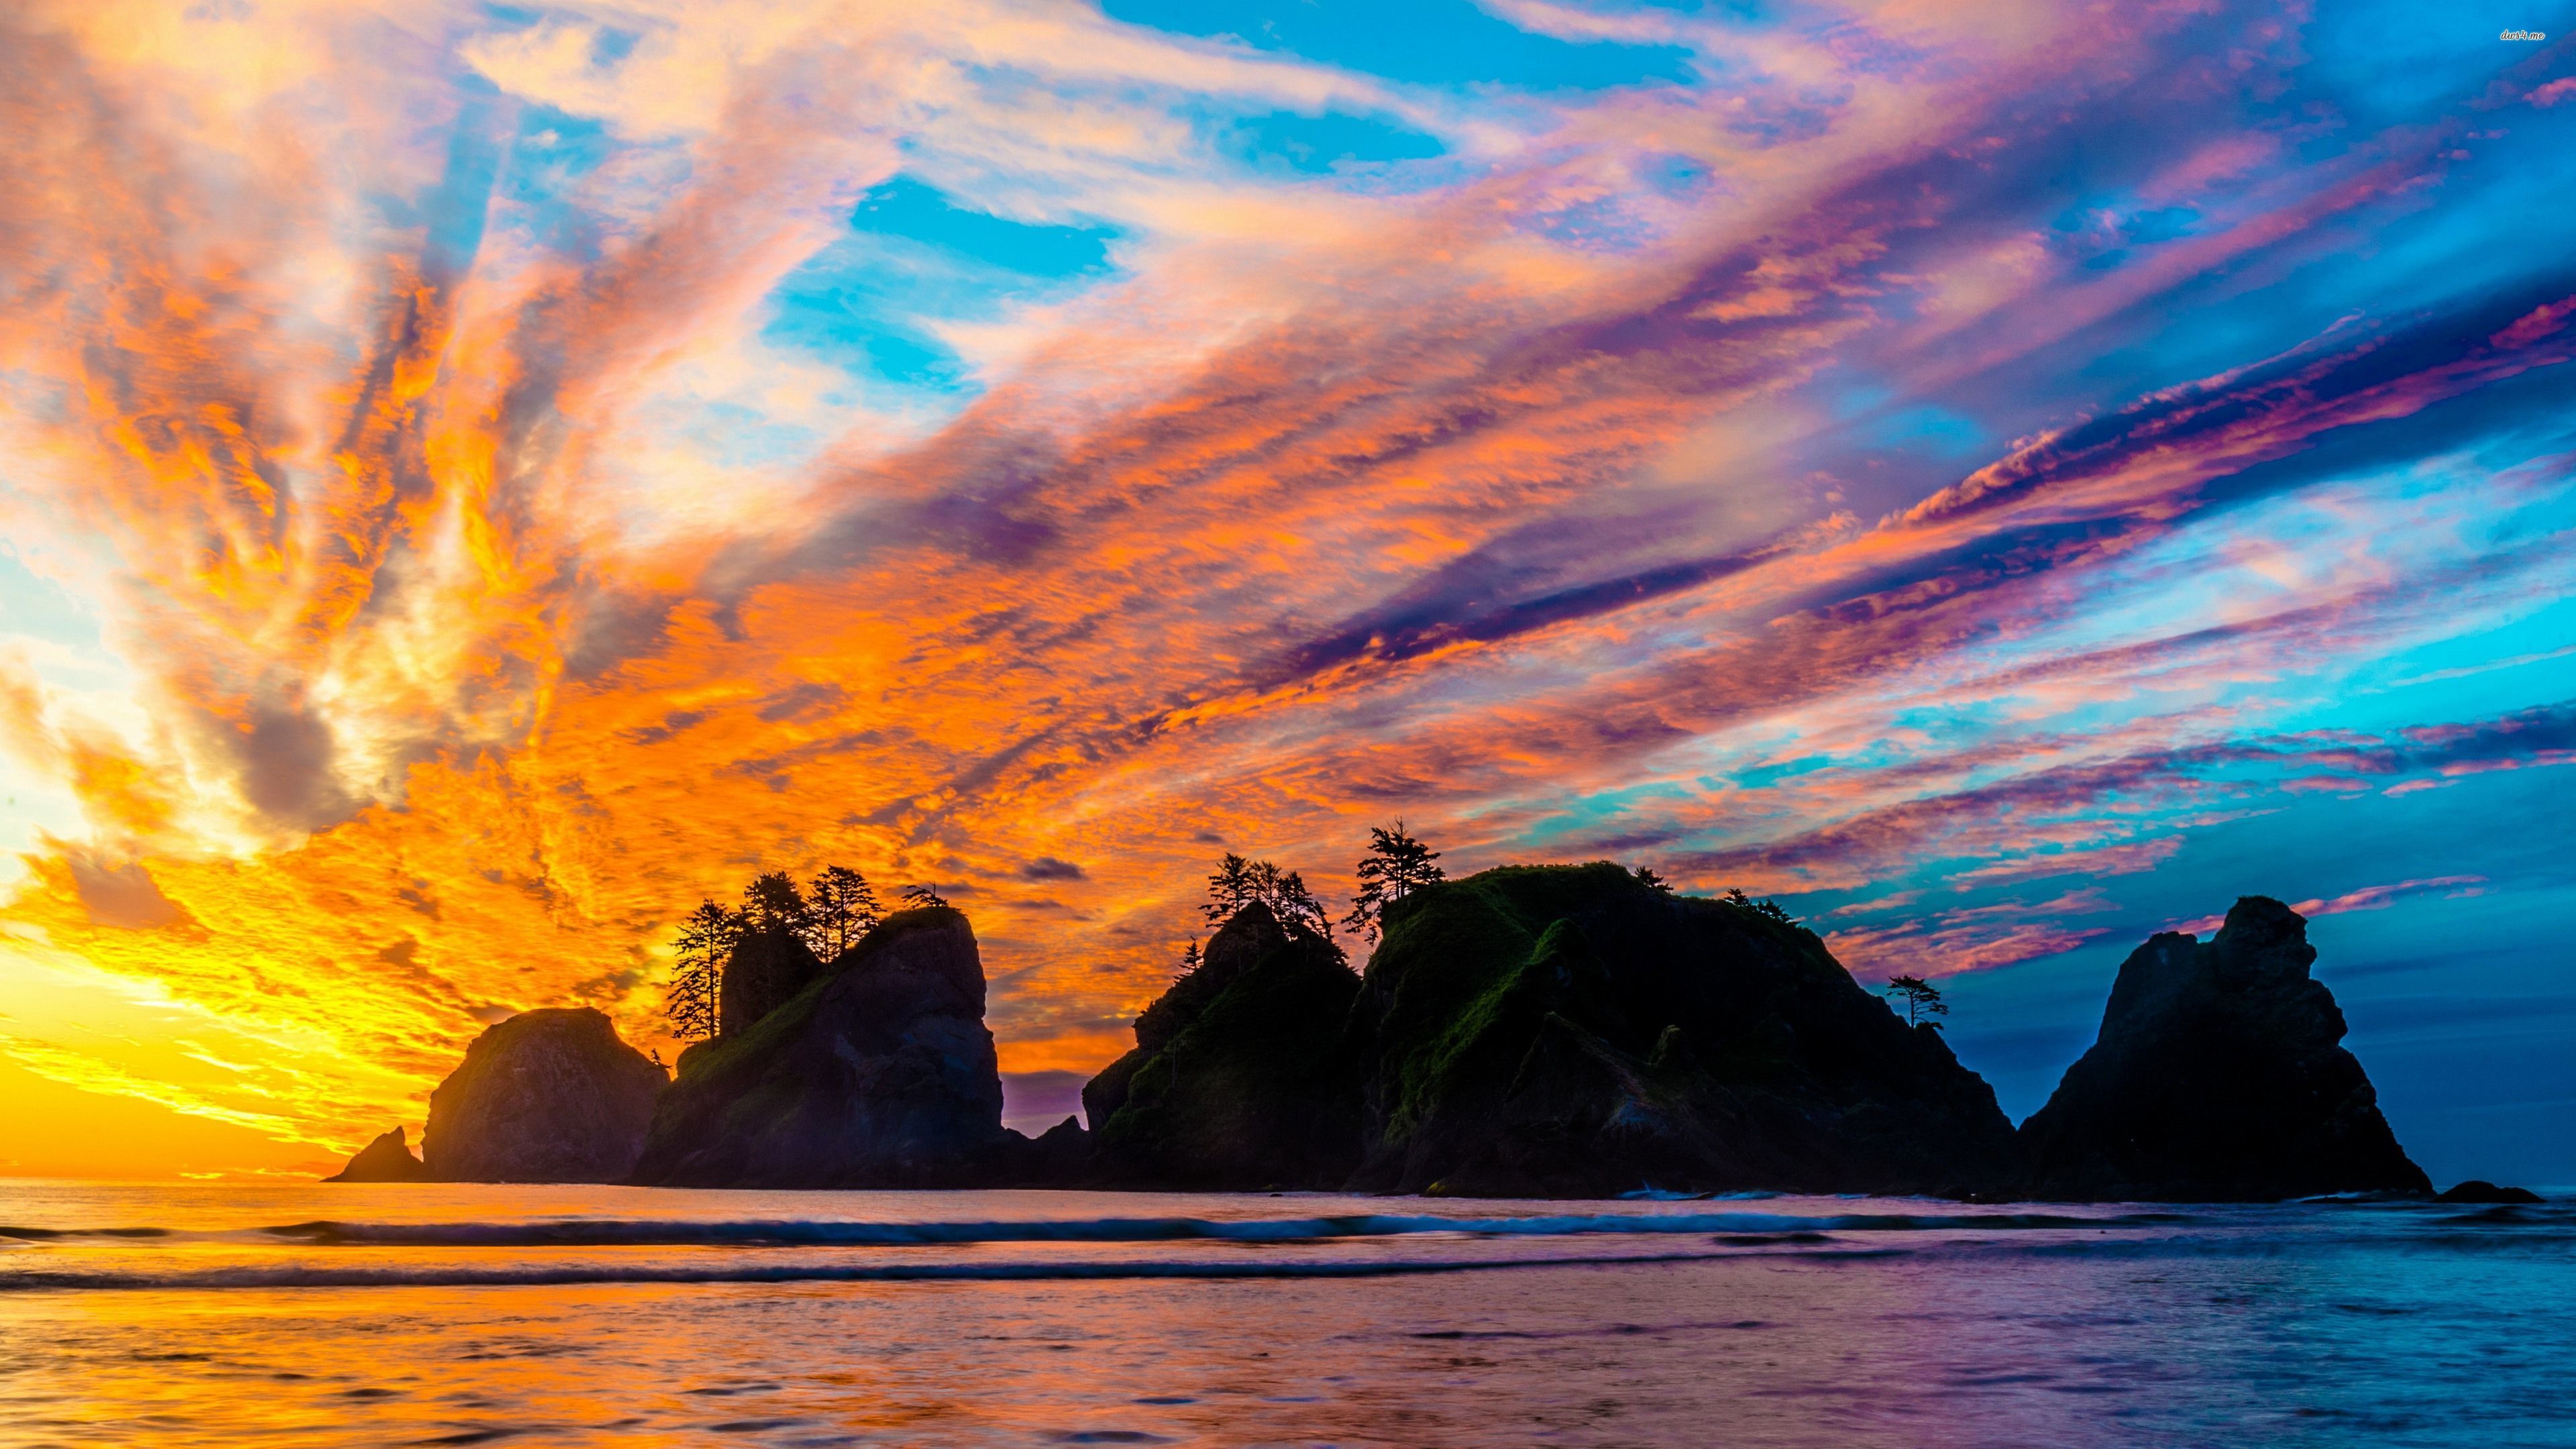 Sunset On An Island - HD Wallpaper 